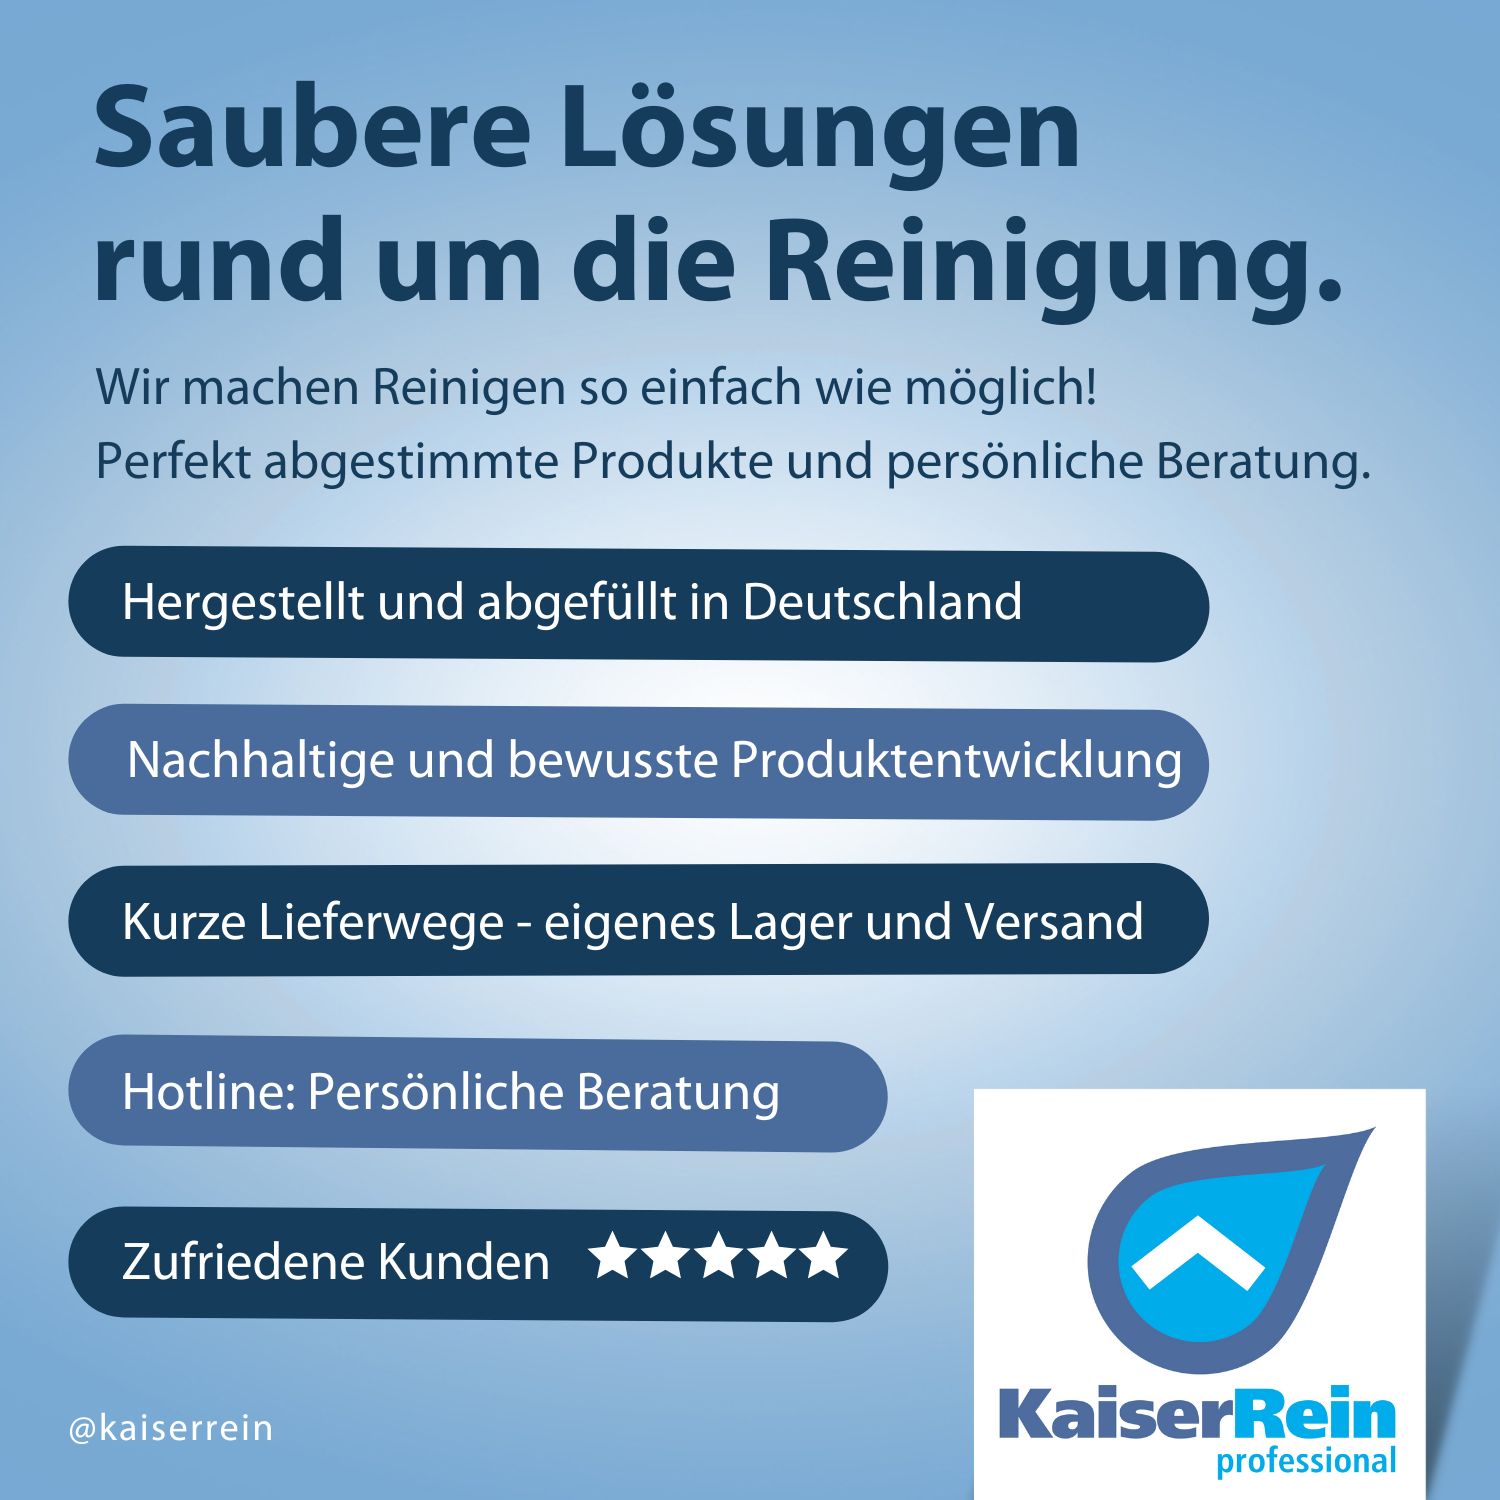 KaiserRein Eisbad und Pool Desinfektionsmittel 1L ohne Chlor - Zuverlässige Wasserpflege und Reinigung für Eisbäder